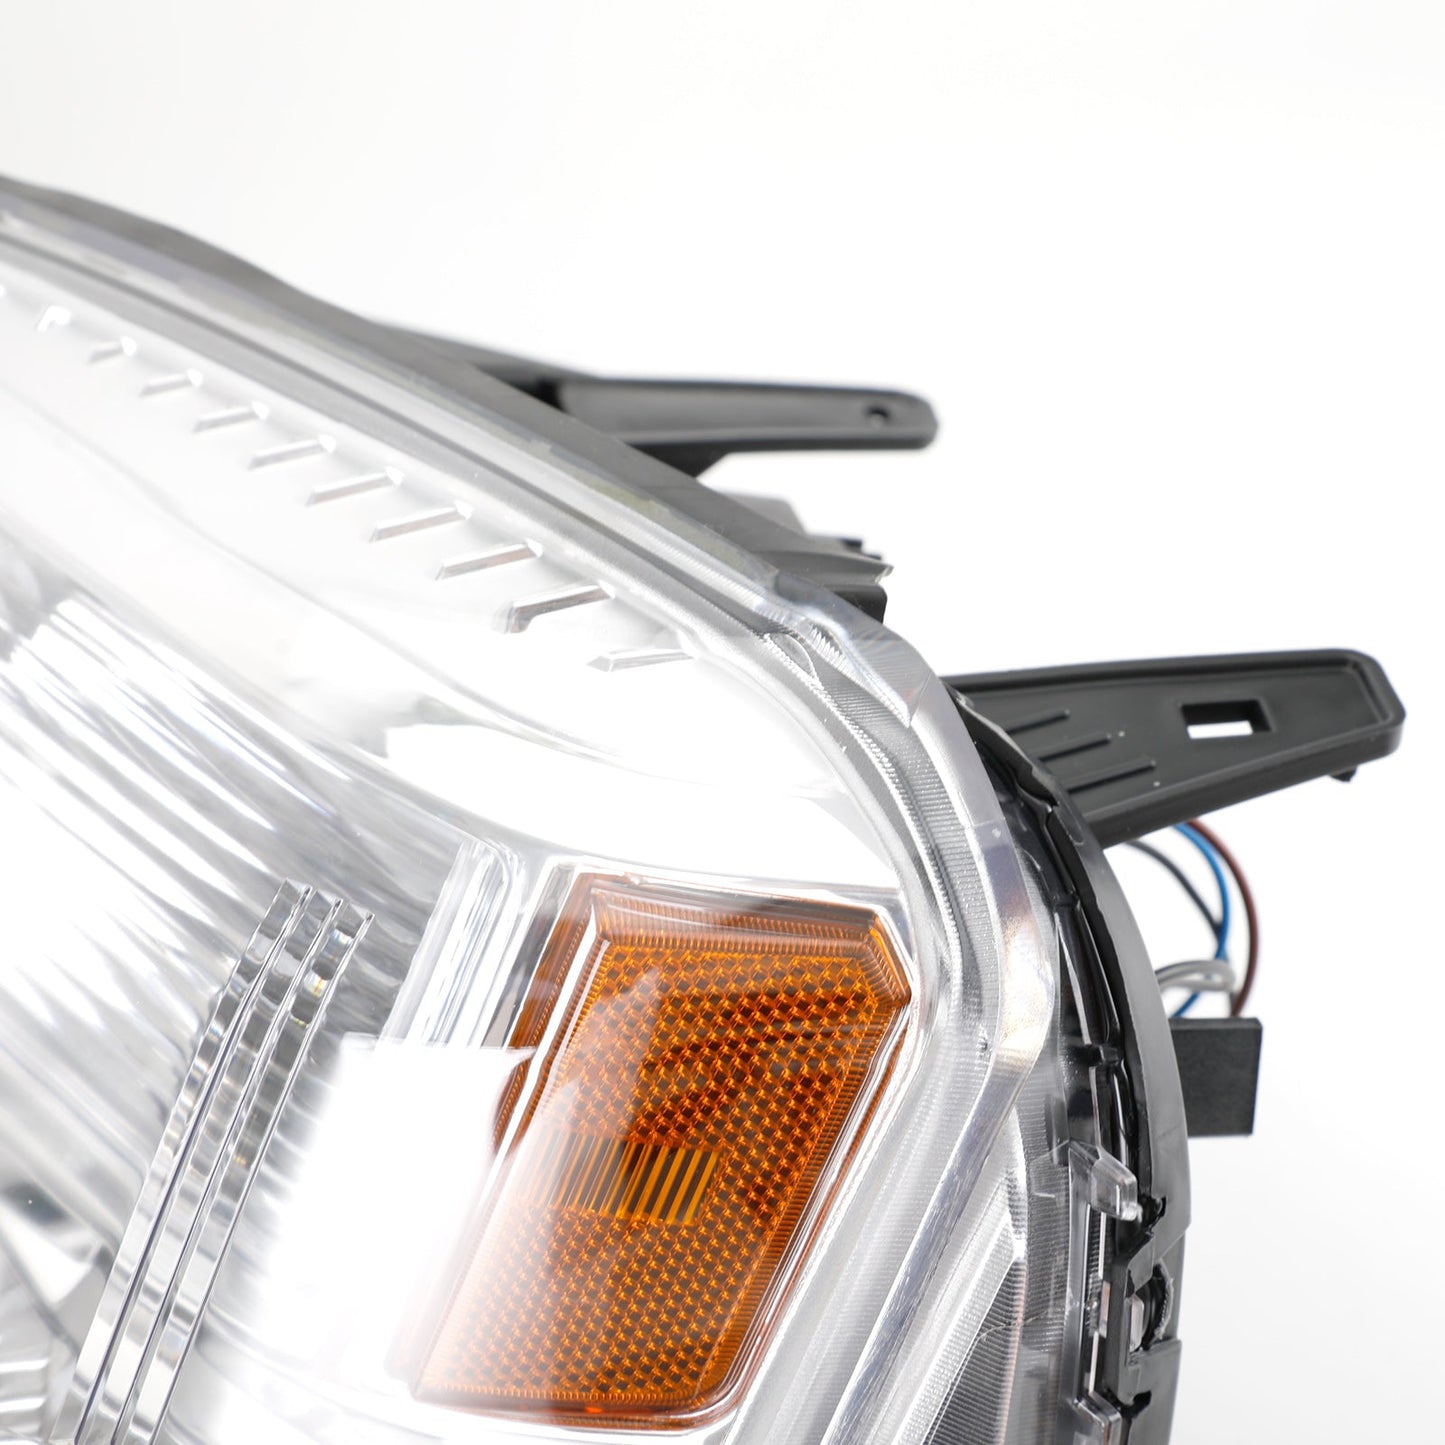 GMC Terrain 2016-2017 Left+Right Projector Halogen Headlights Headlamps